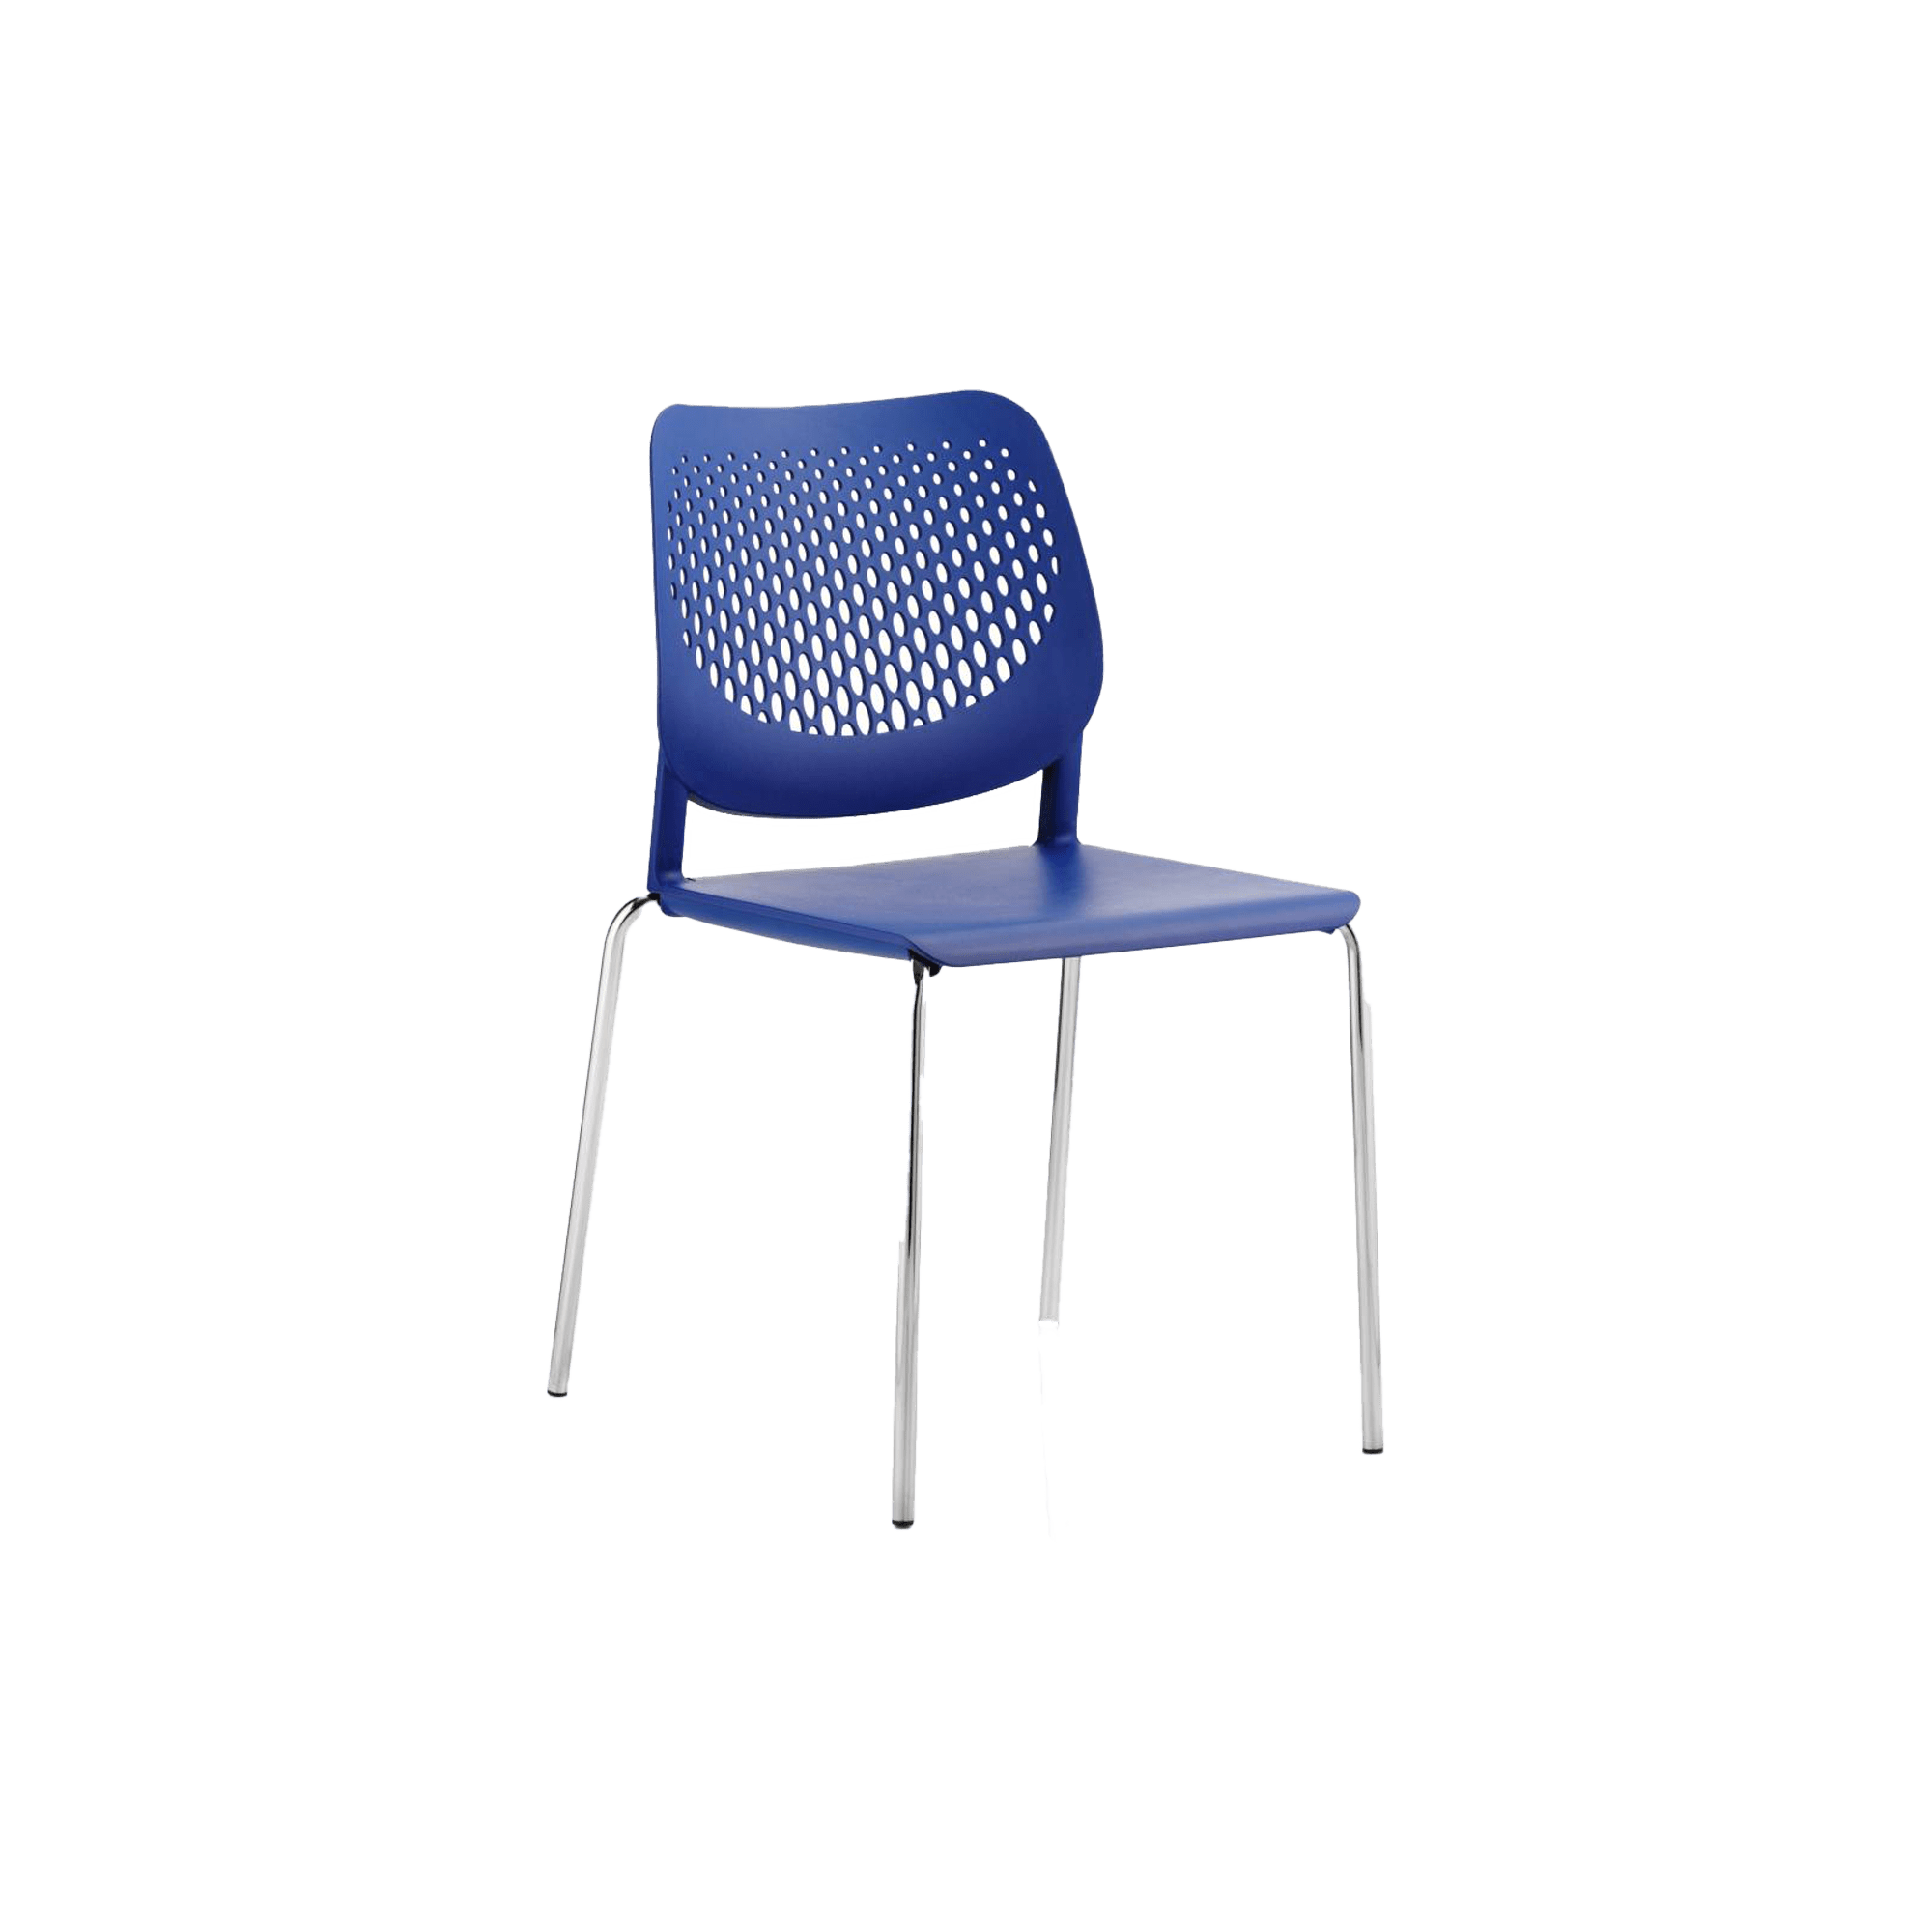 A blue plastic chair